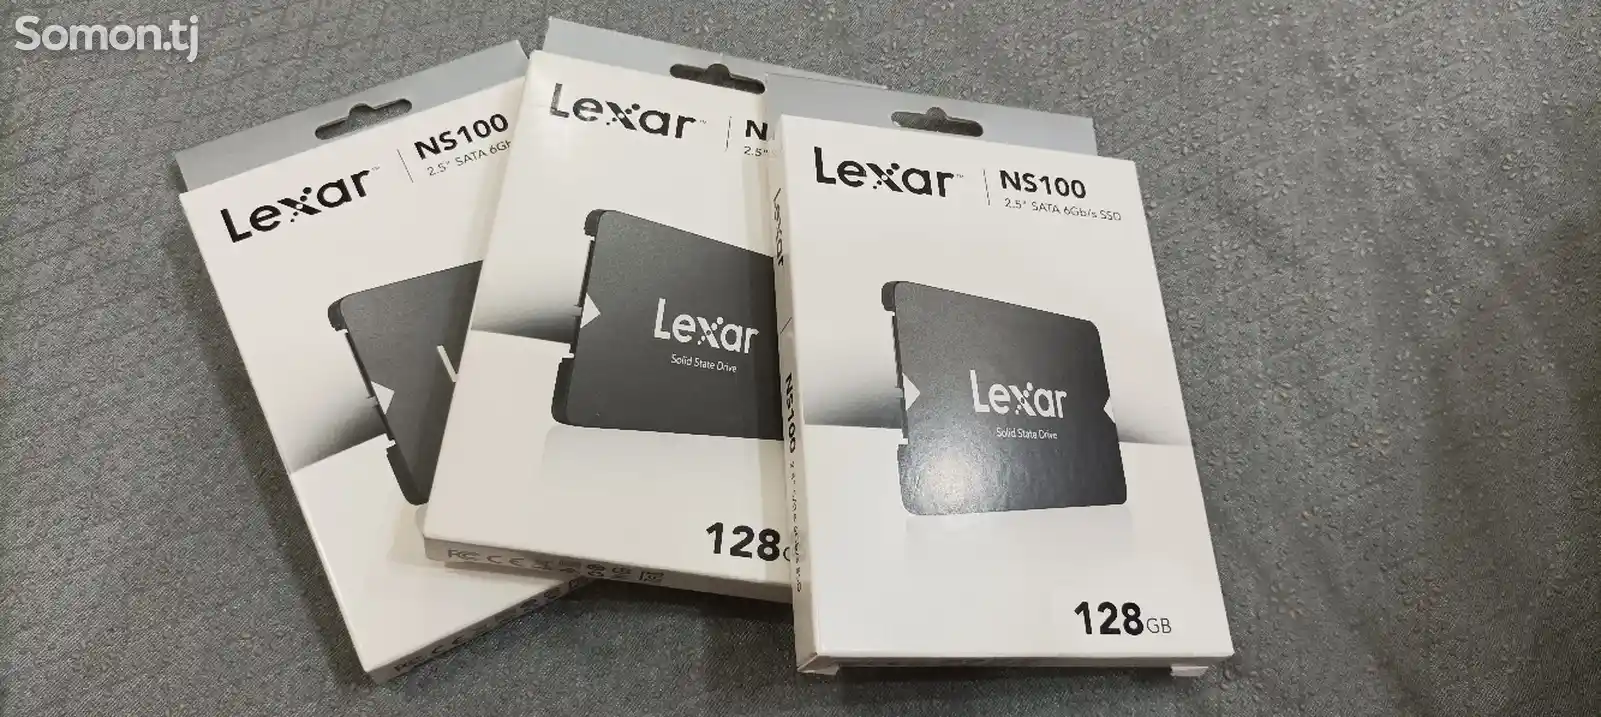 SSD накопитель Lexar NS100 128gb-2